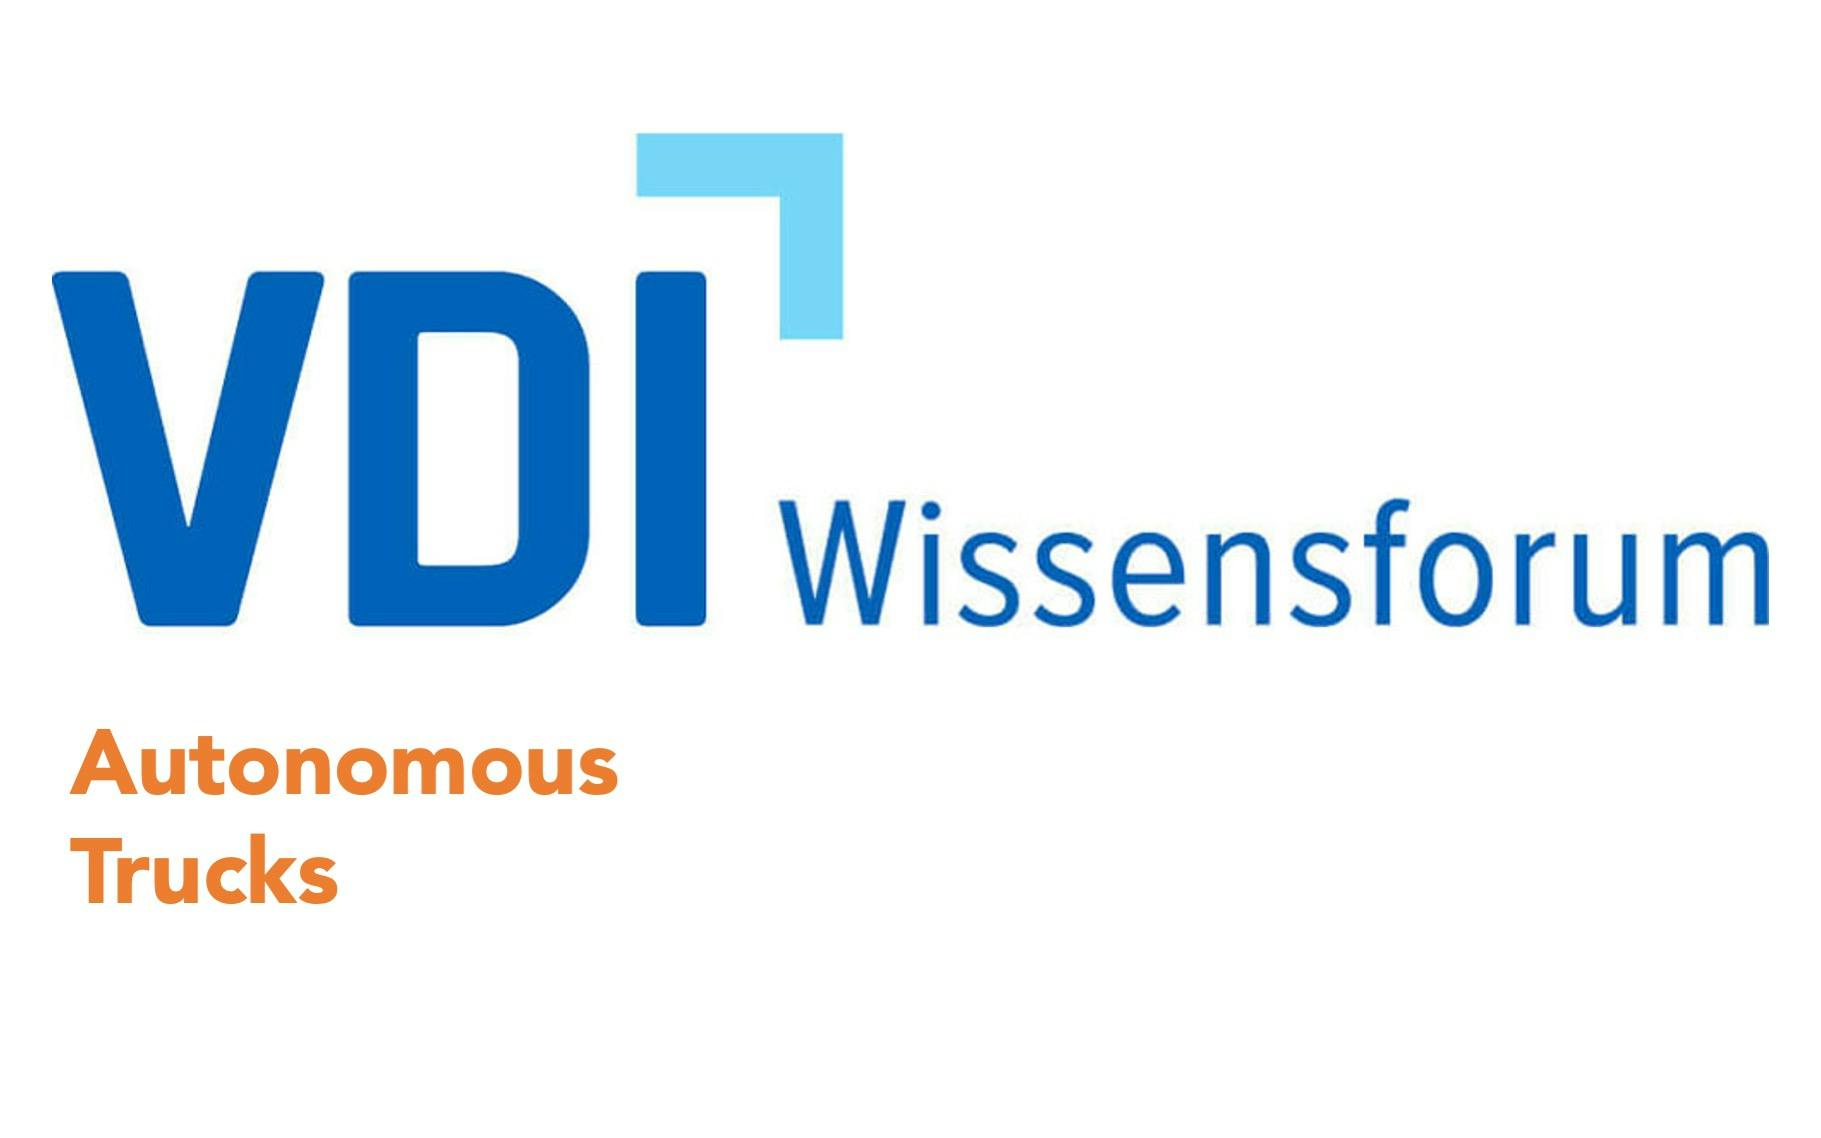 VDI Wissensforum Autonomous Trucks logo